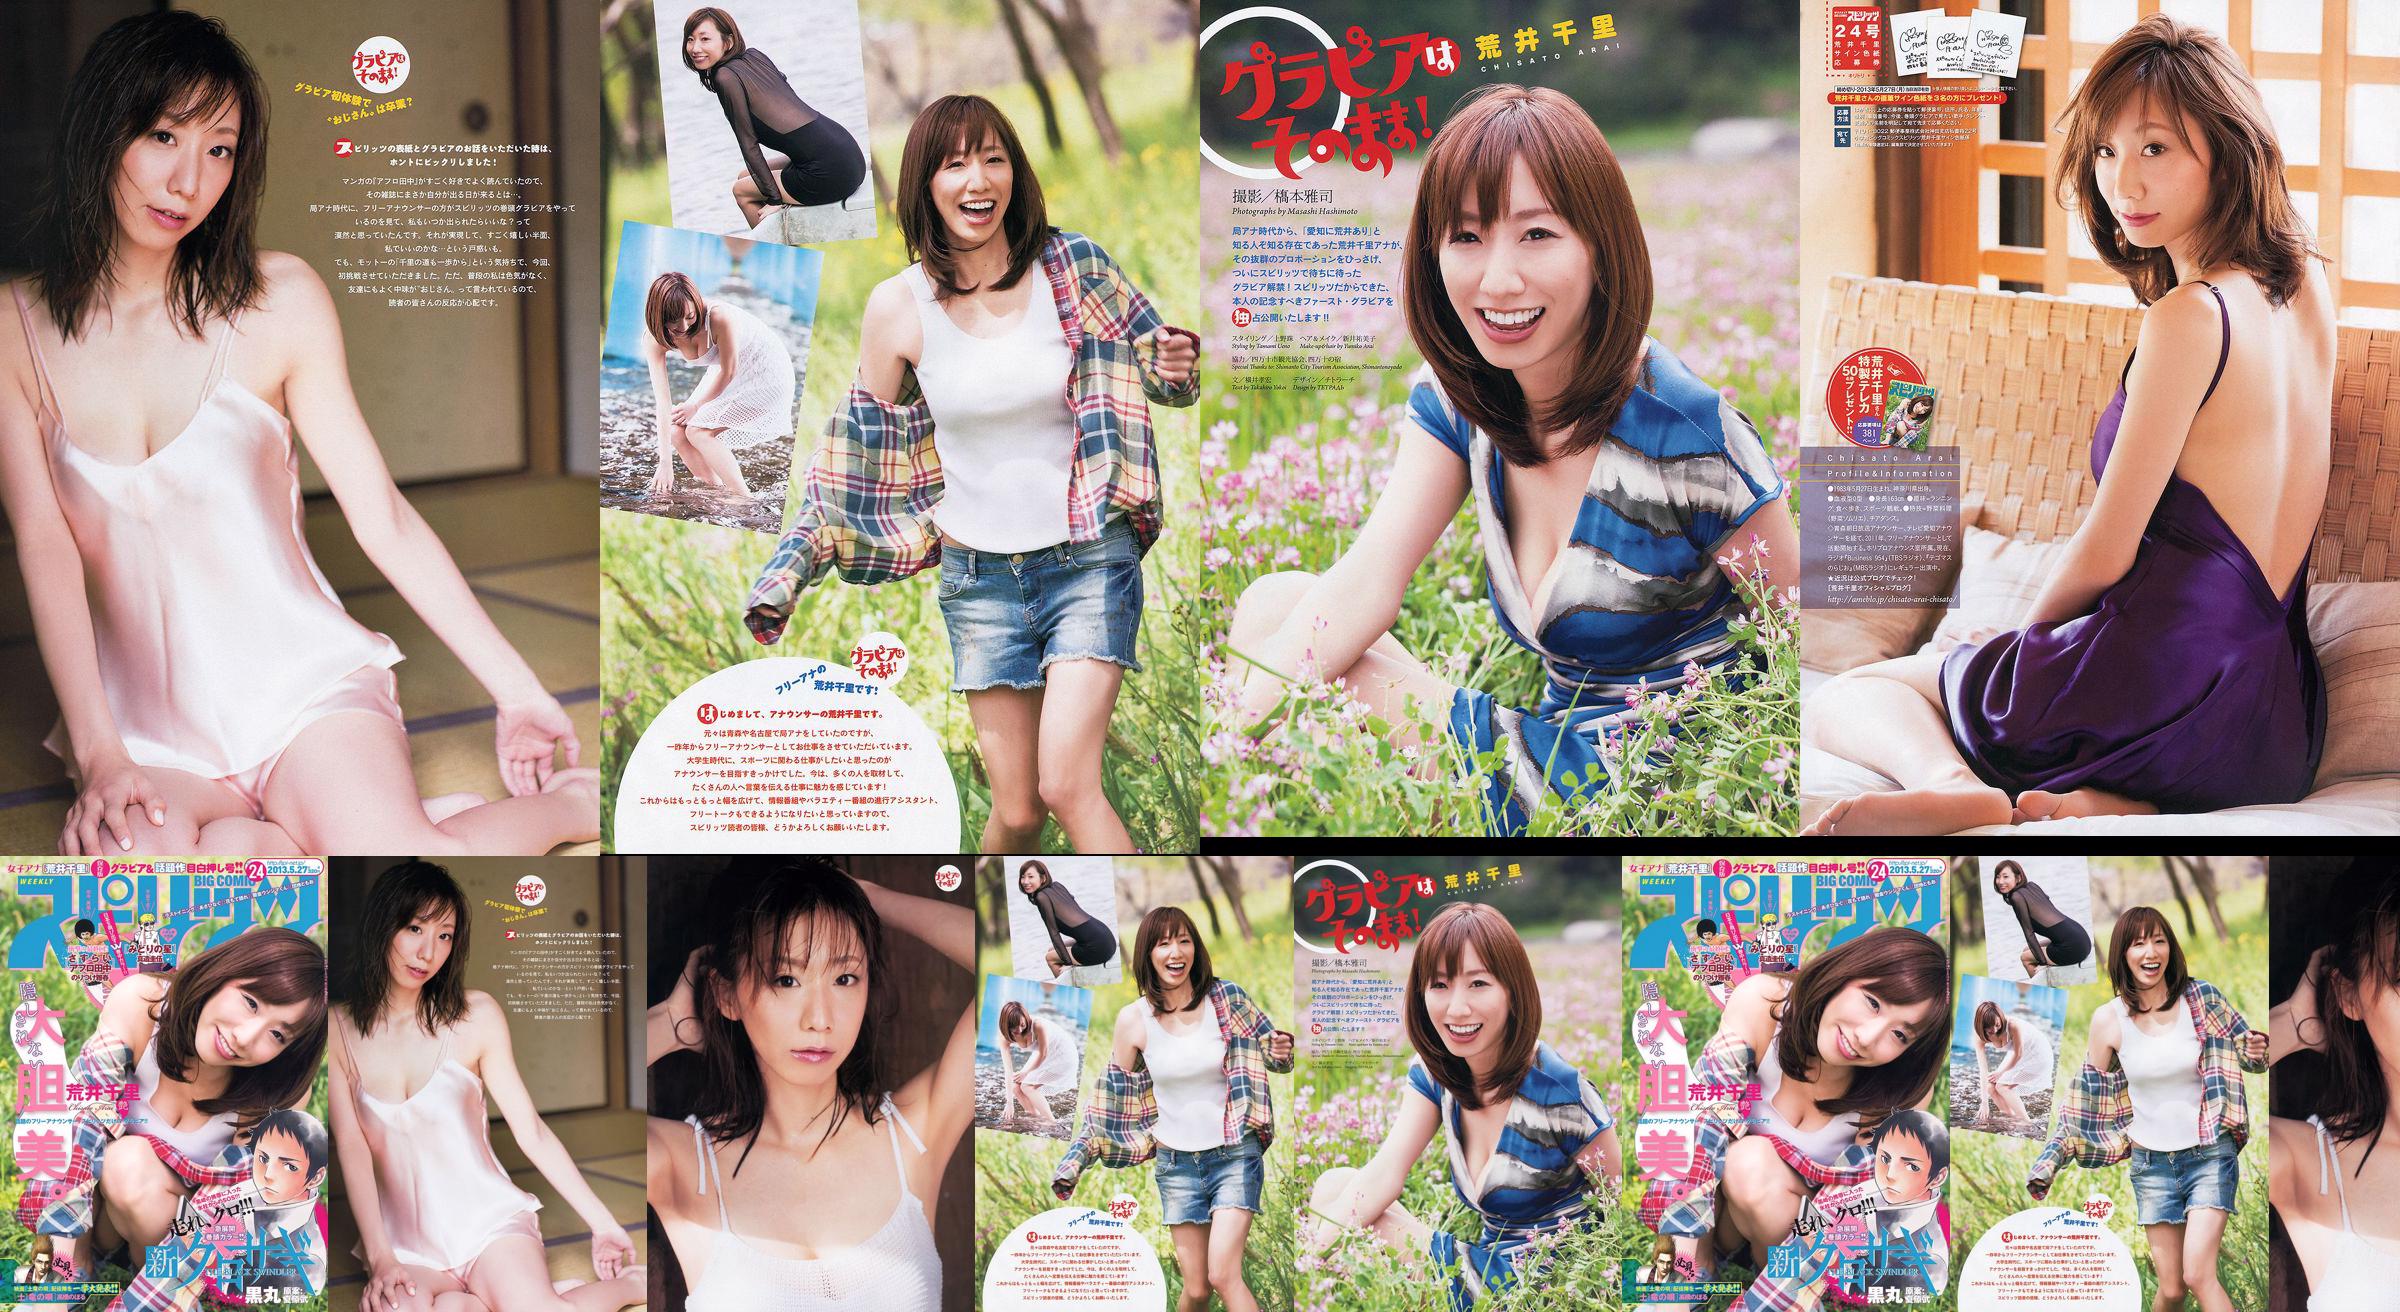 [Semangat Komik Besar Mingguan] Chisato Arai 2013 Majalah Foto No.24 No.dfc52f Halaman 1